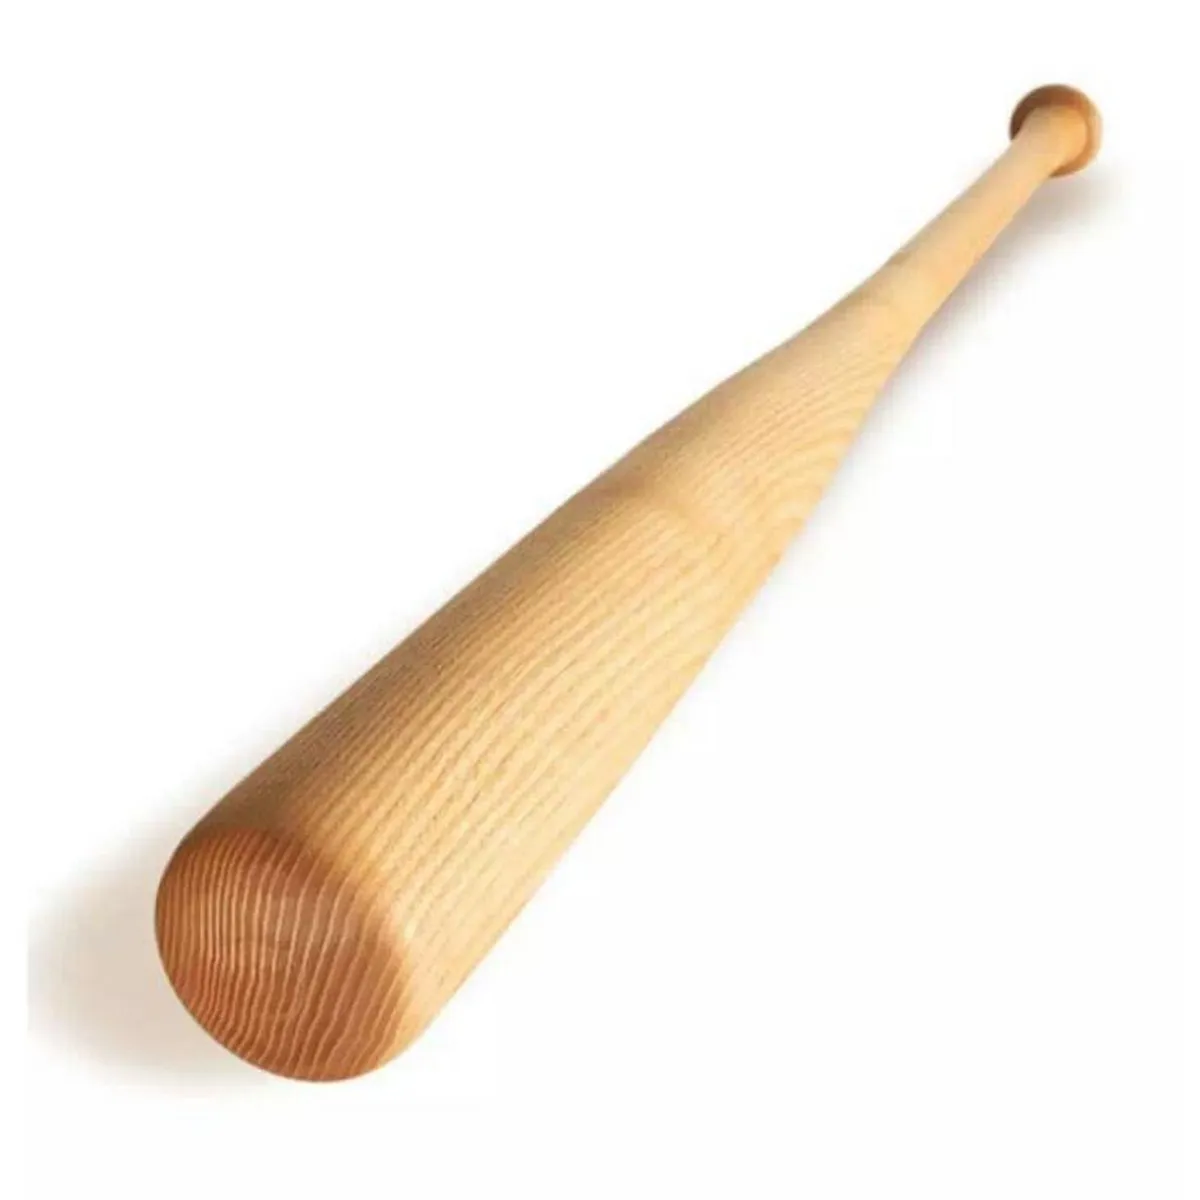 A wooden stick. Бита деревянная. Wooden Stick. Bat Wood. Wooden bat Mirror.